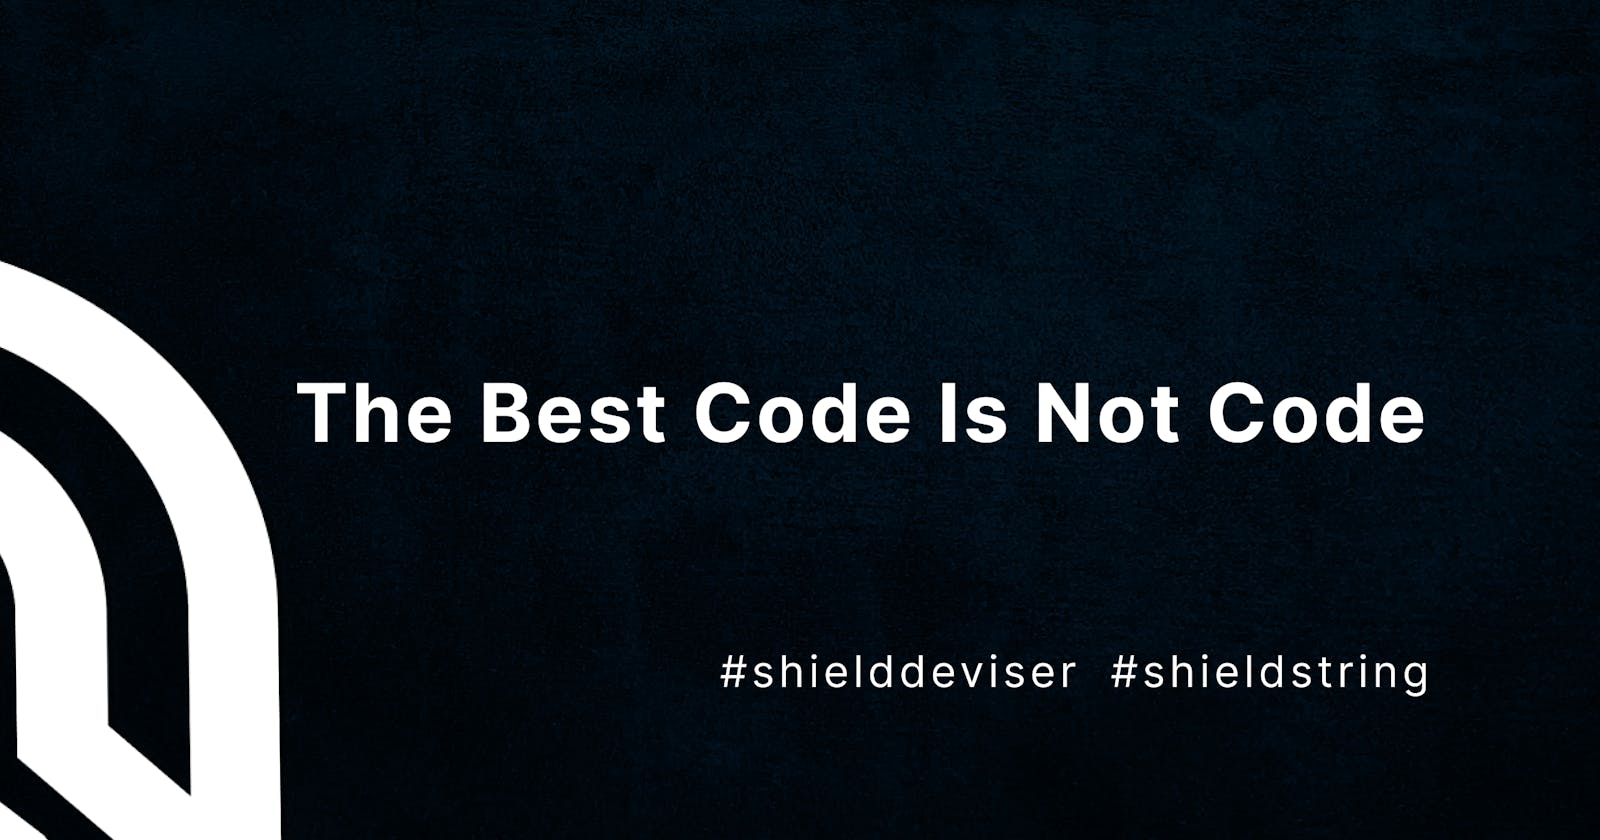 The Best Code Is Not Code